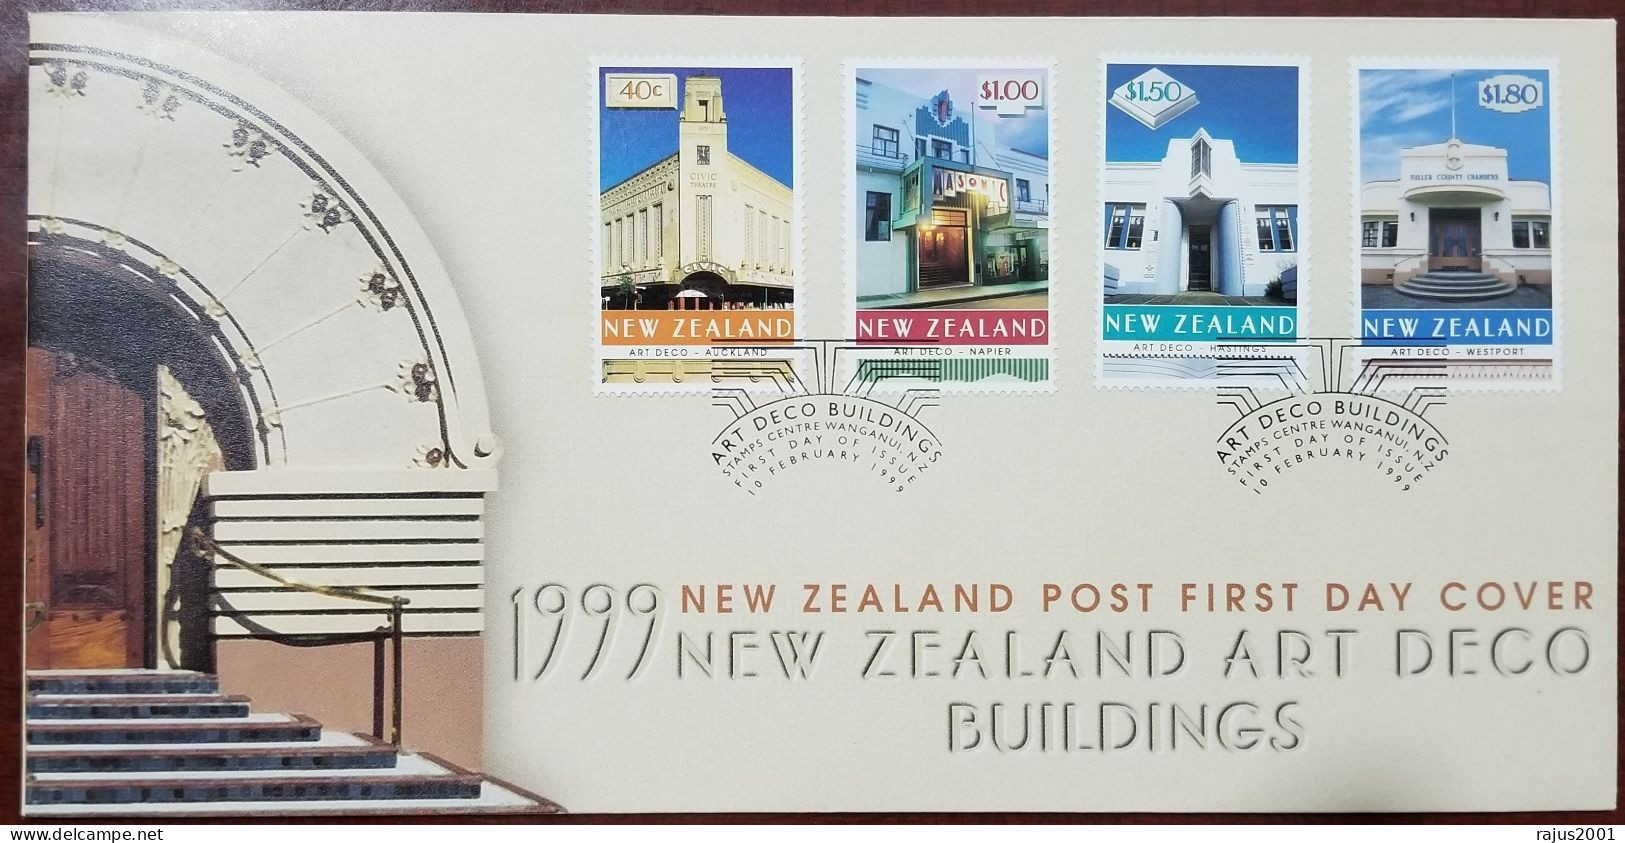 Masonic Hotel At Napier, Masonic Lodge, Freemasonry, Civic Theater, Clock, Architecture, New Zealand 1999 FDC - Francmasonería